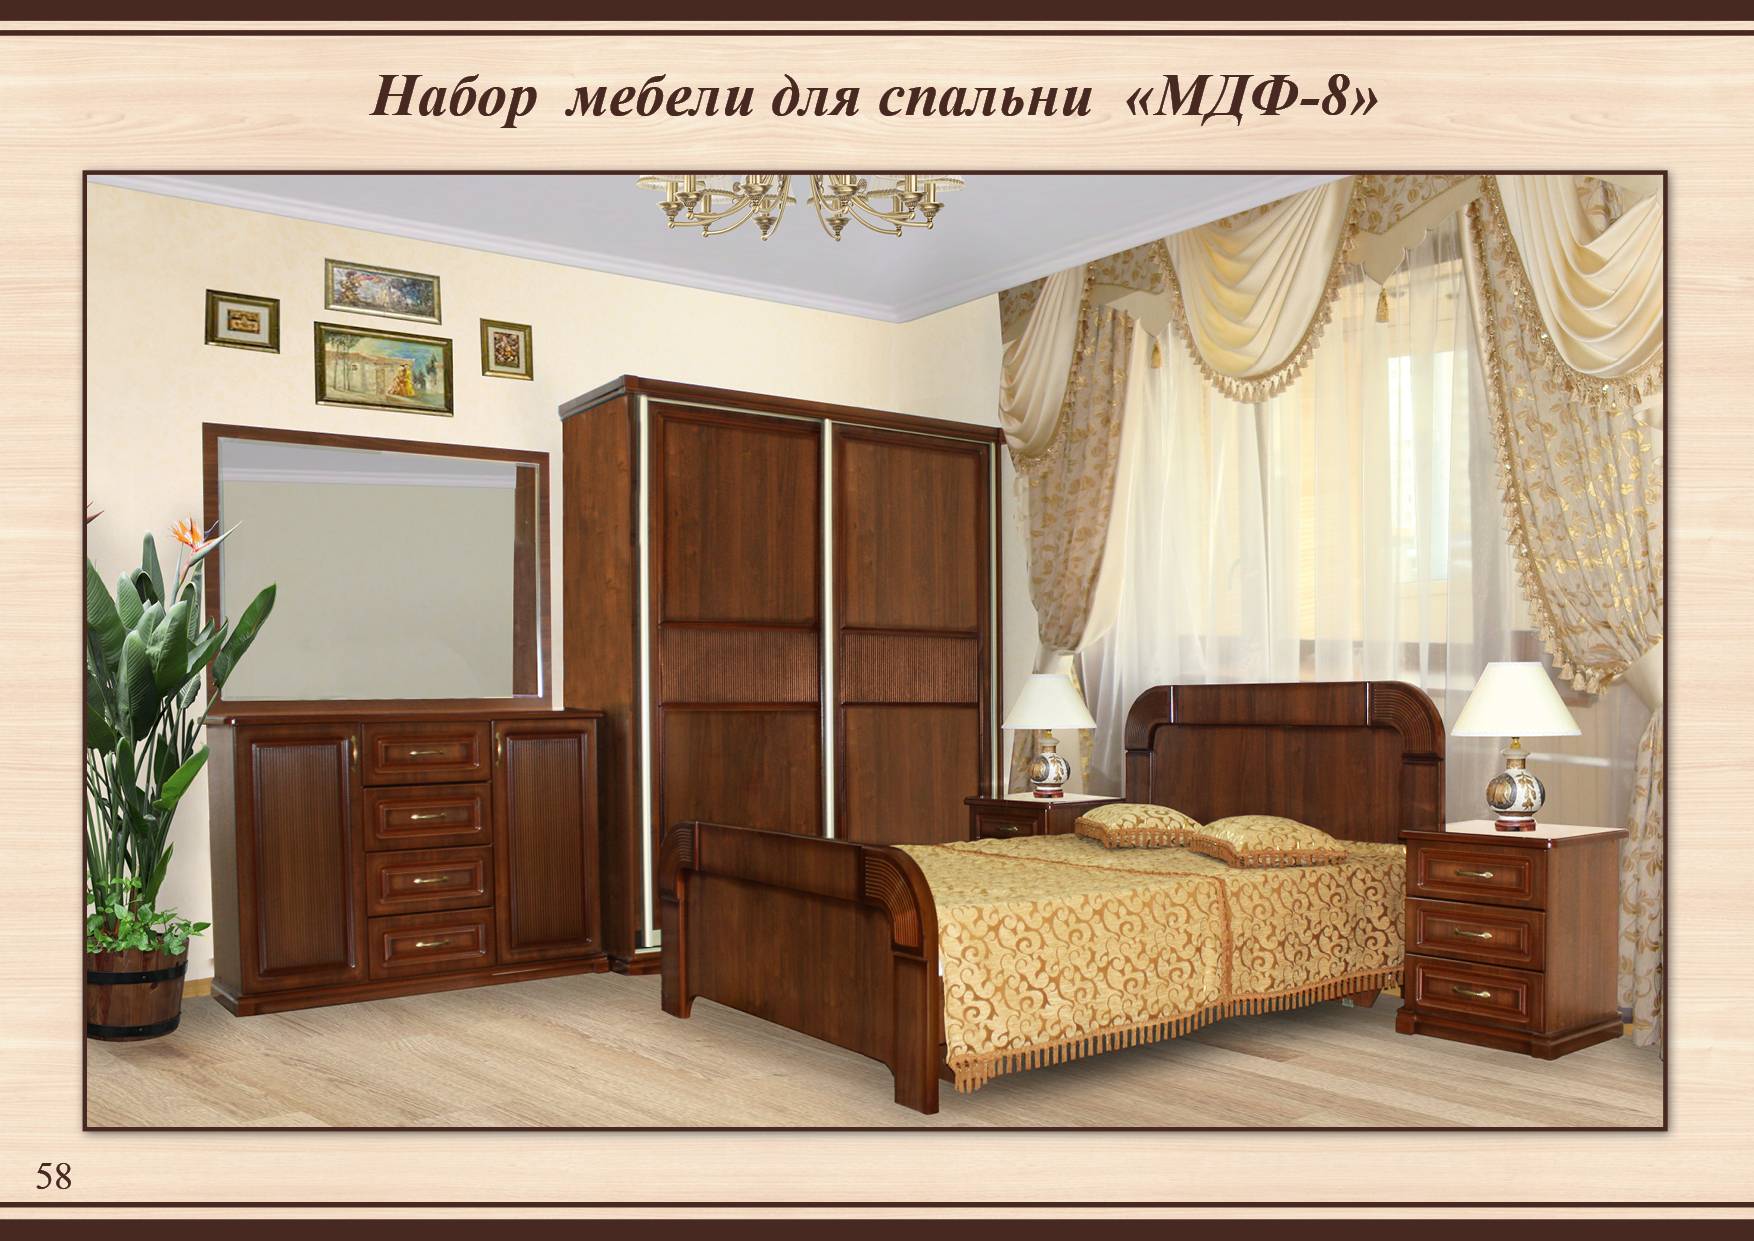 Спальня МДФ 8с Тамбовской фабрики по модулям: кровать, шкаф, комод, зеркало, тумбочки